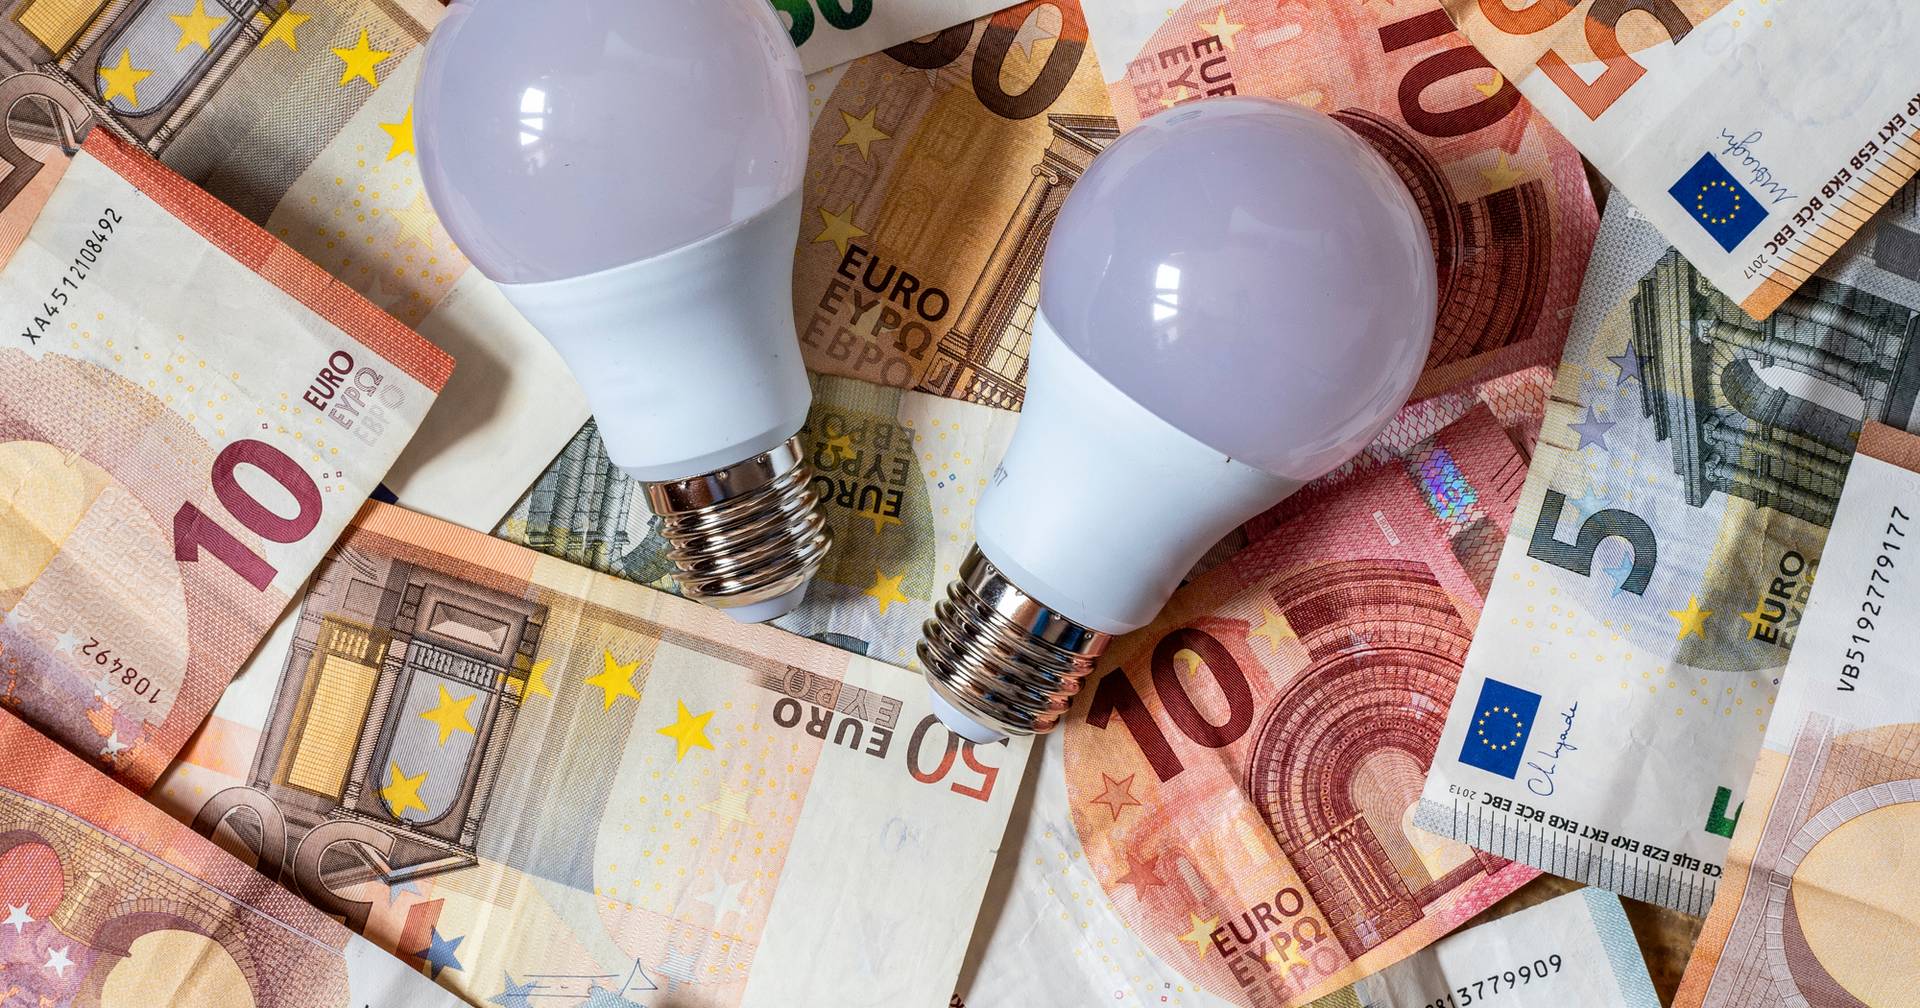 Die meisten deutschen Ökonomen befürworten eine Senkung der Energiekosten für Haushalte